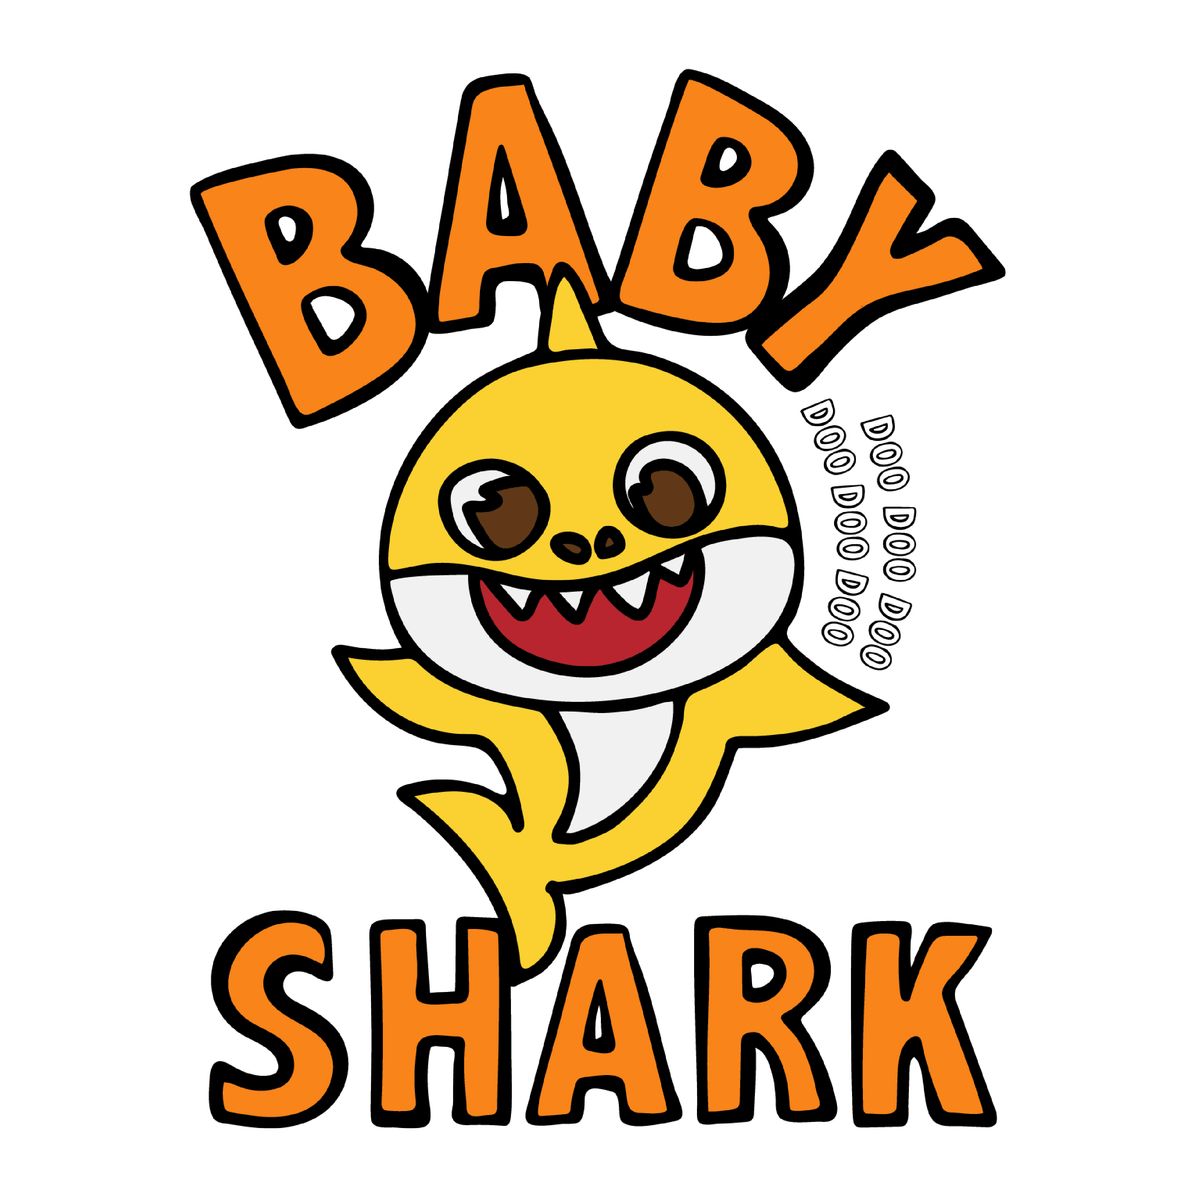 Baby Shark 🦈 - Women's Crop Top